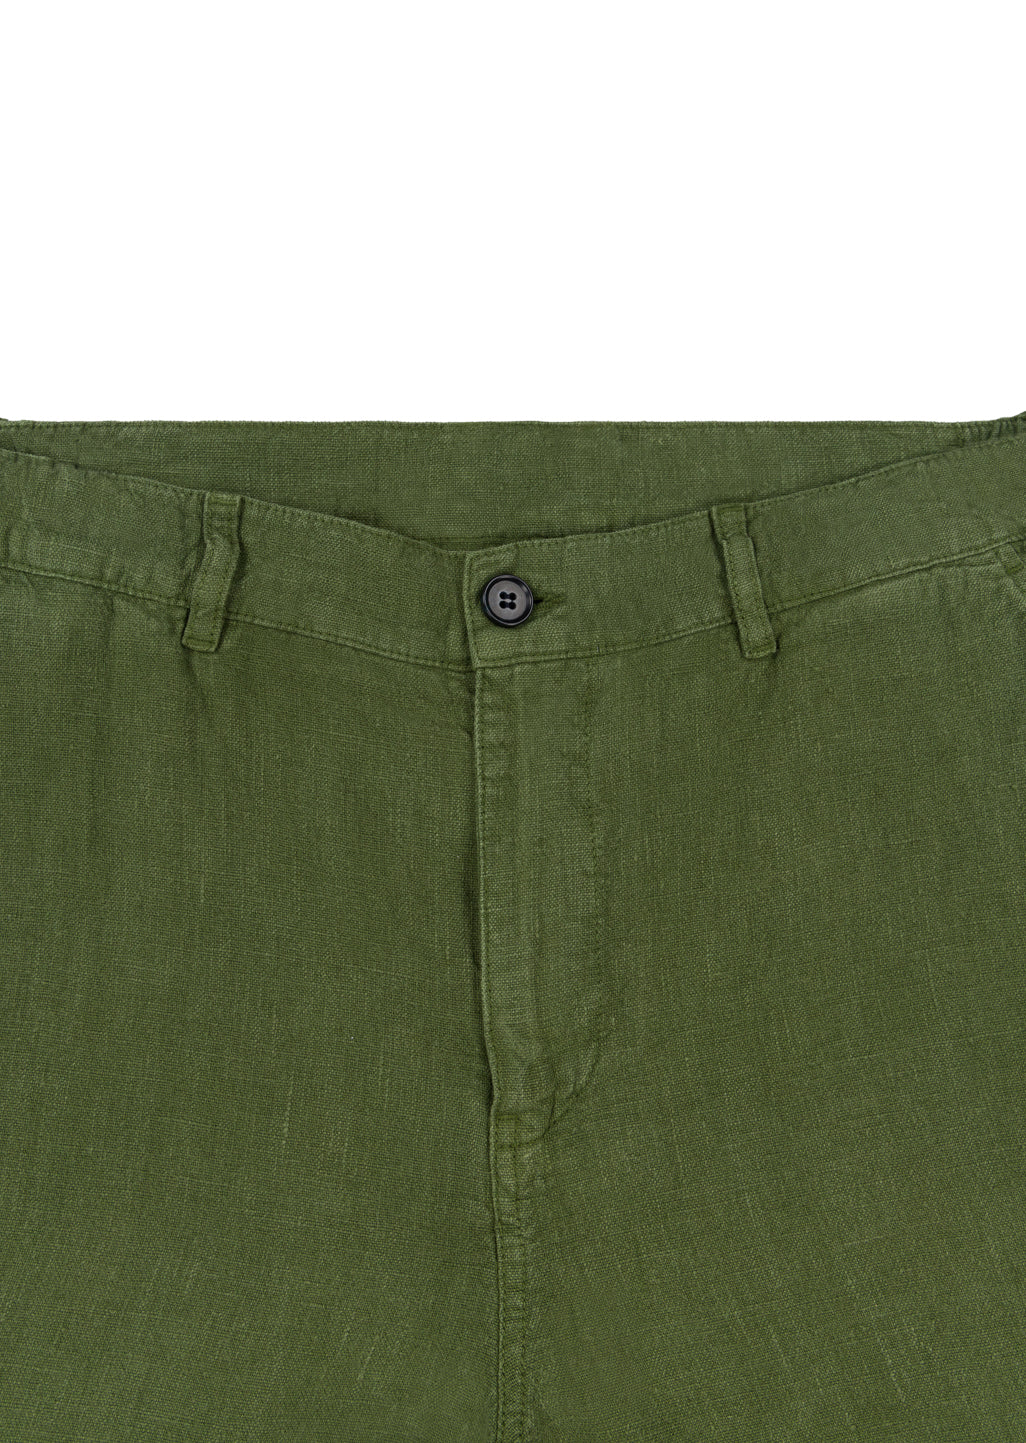 Elasticated Linen Short in Khaki